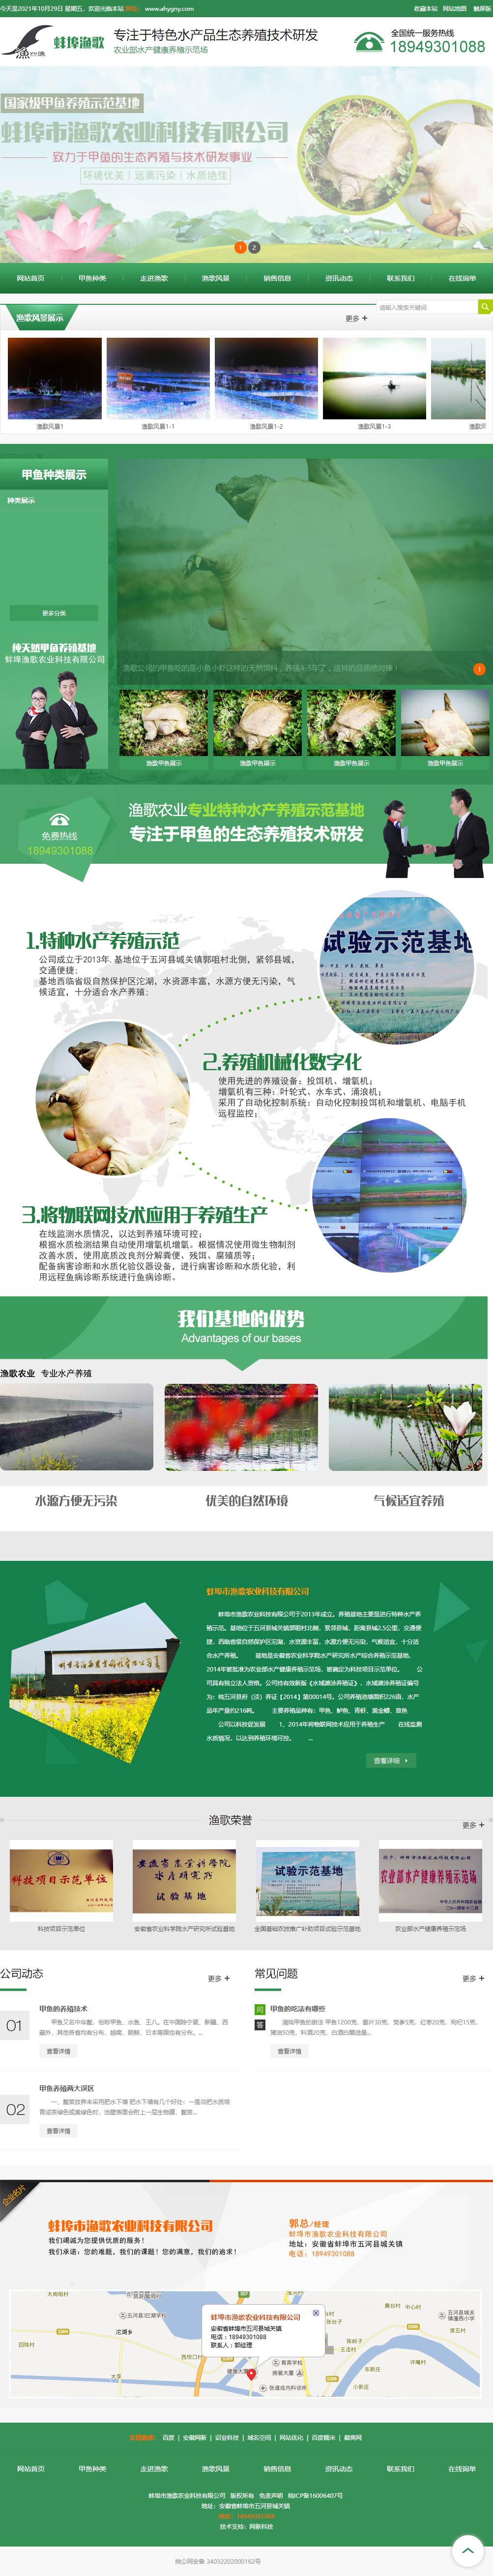 蚌埠市渔歌农业科技有限公司网站案例